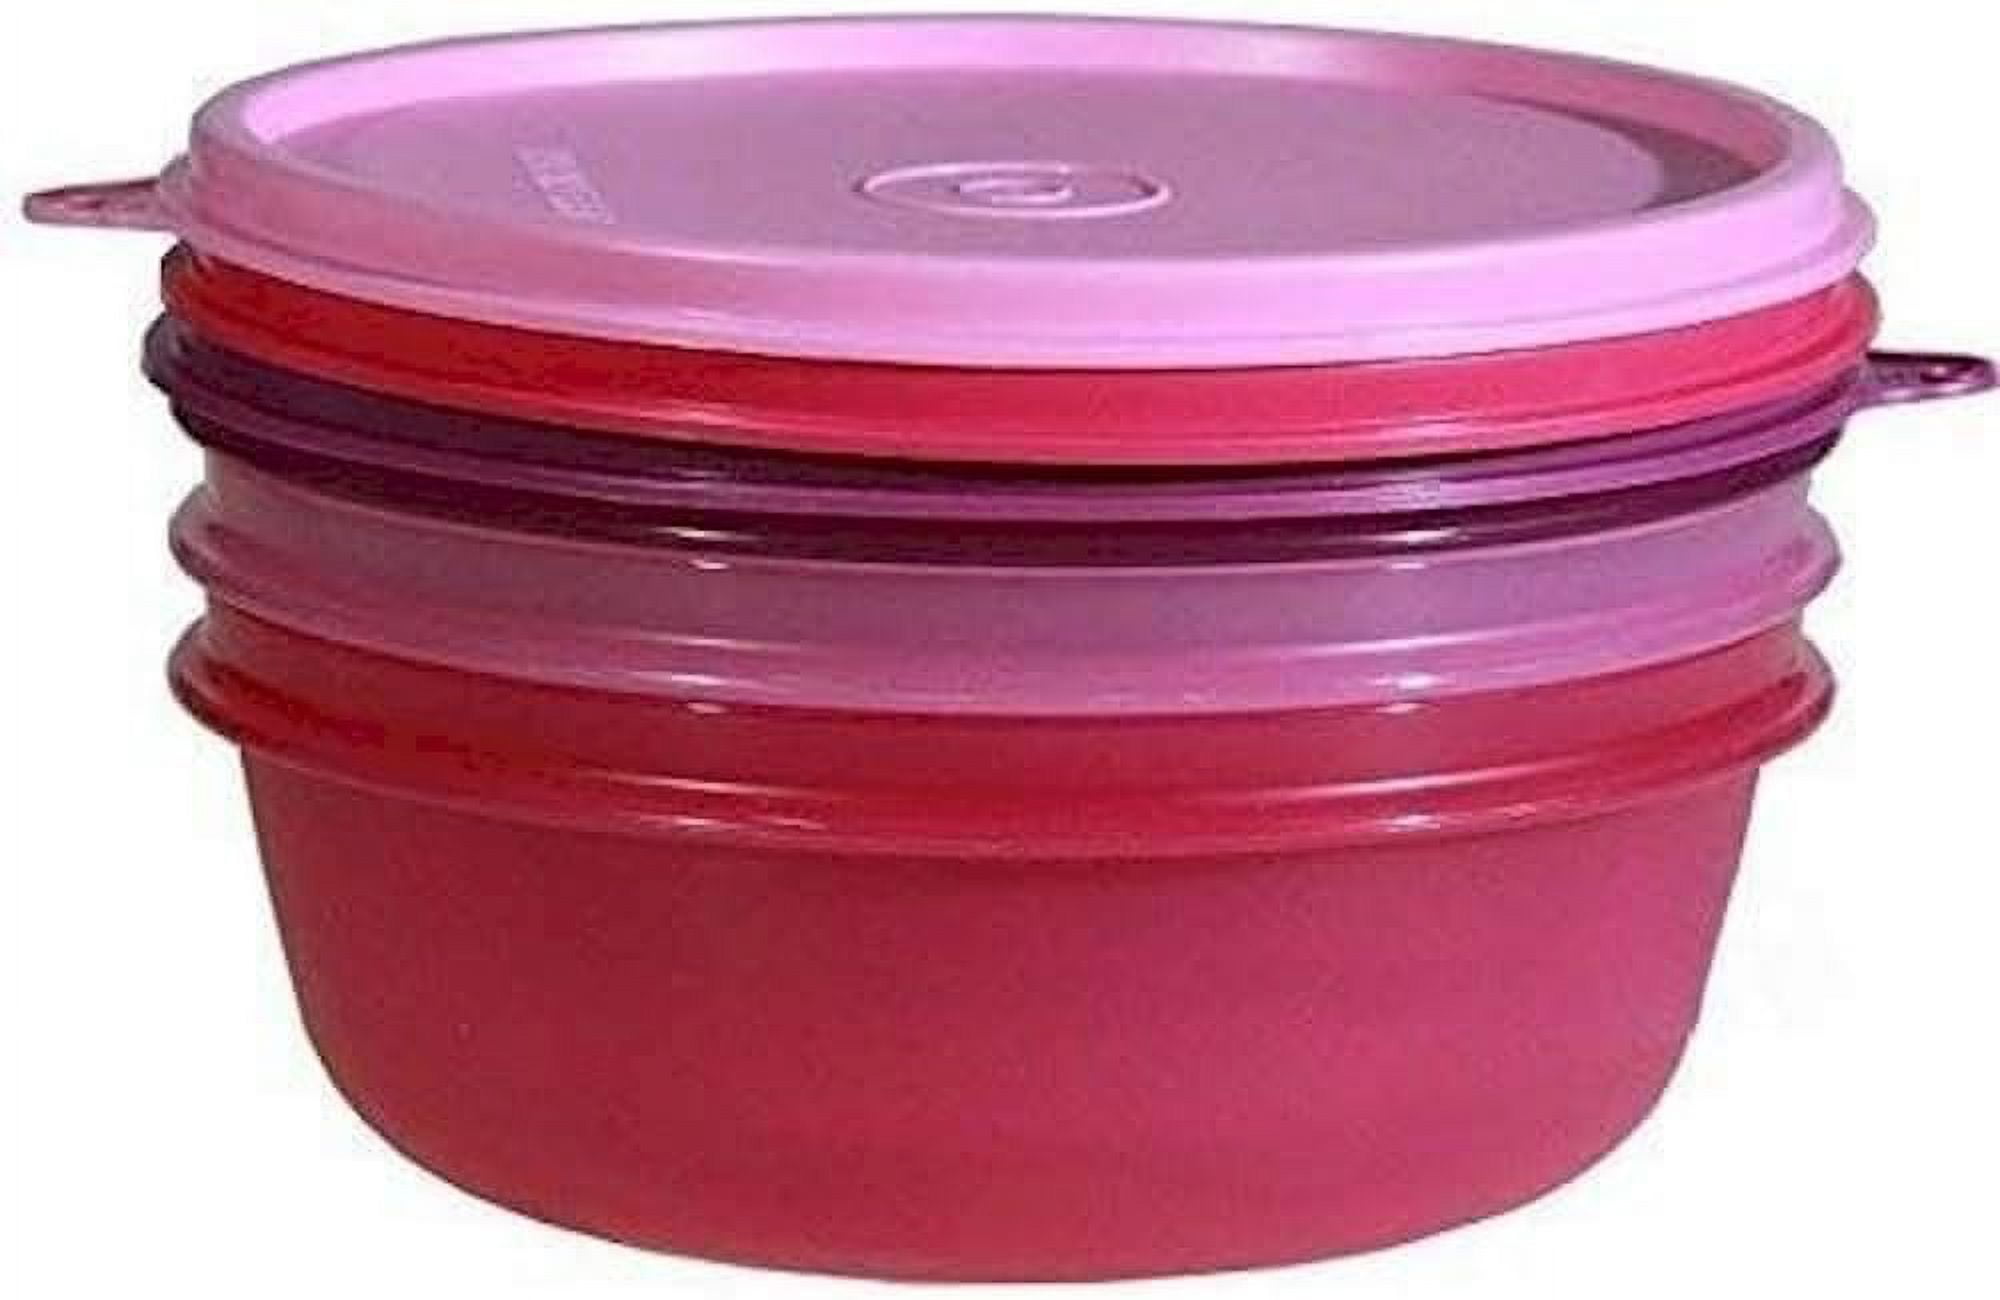 Tupperware Pink Kitchen & dining Storage & Organization